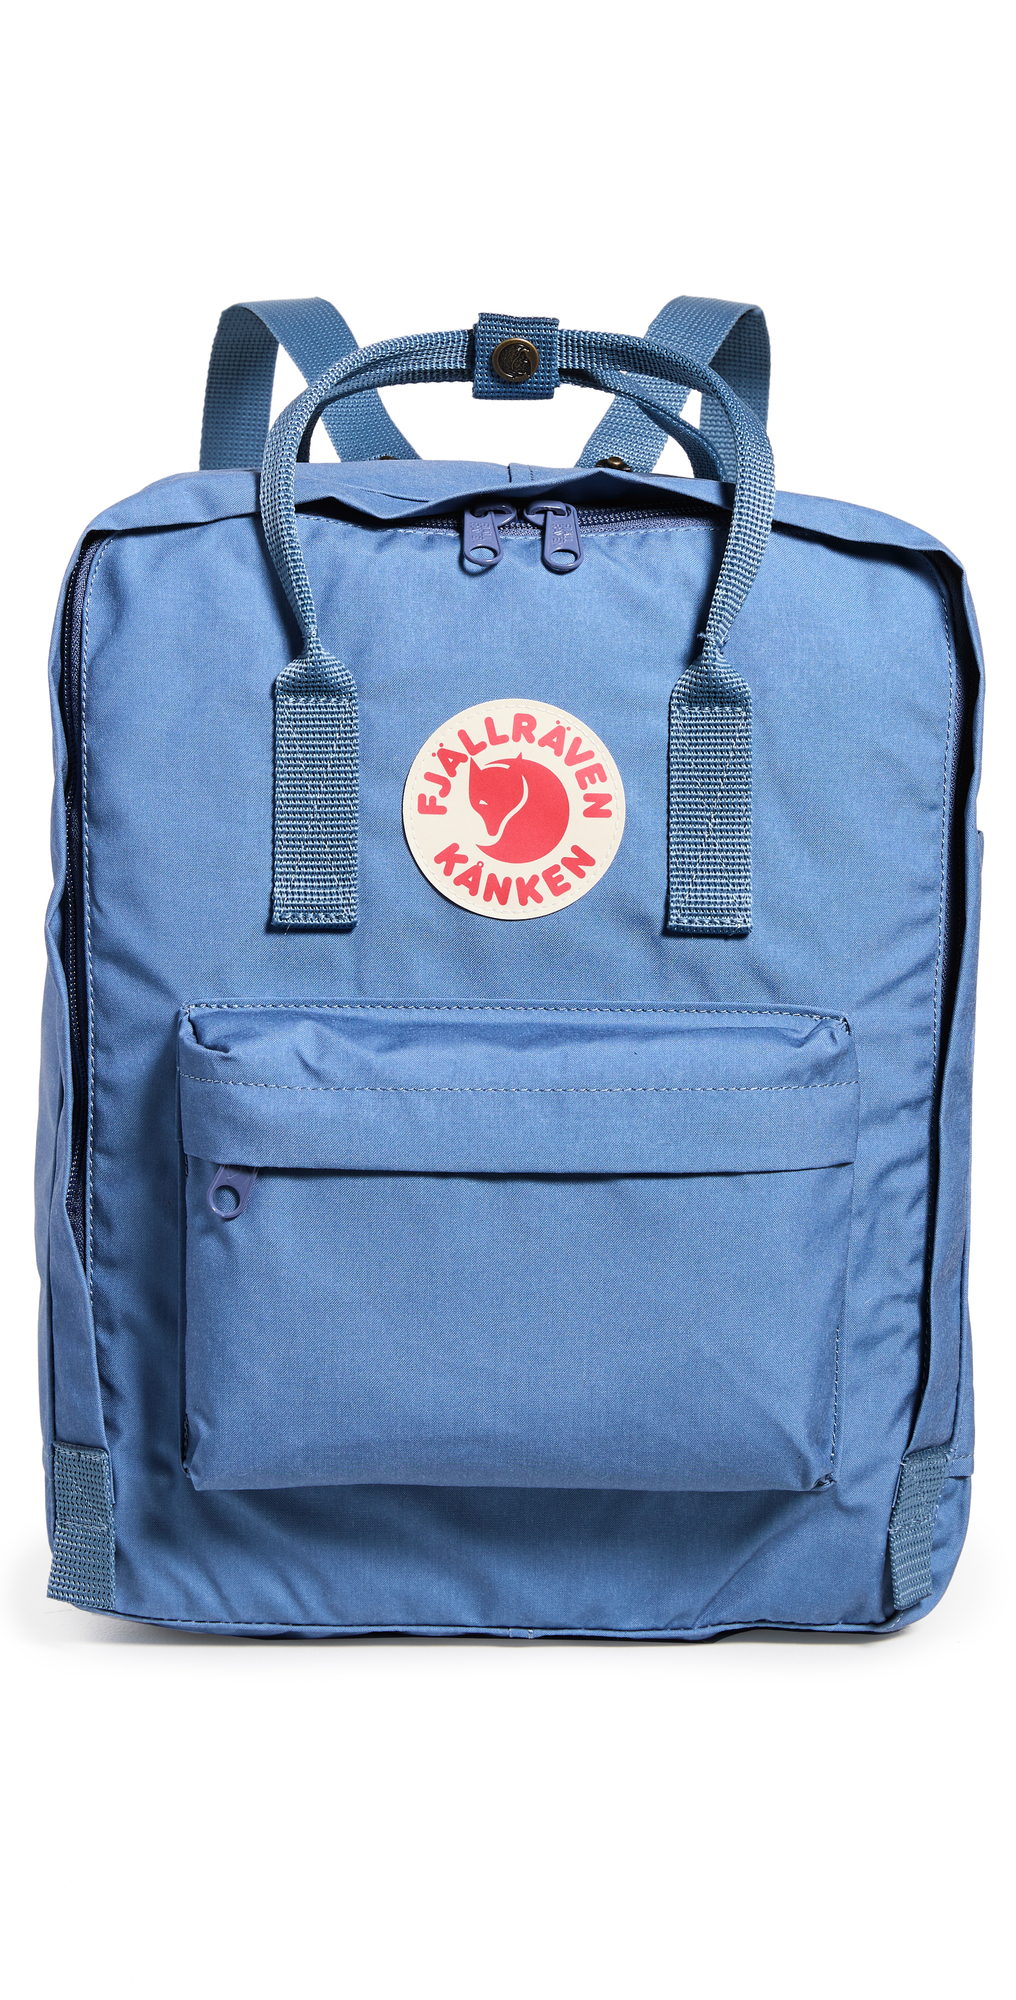 Fjallraven Kanken Backpack in blue